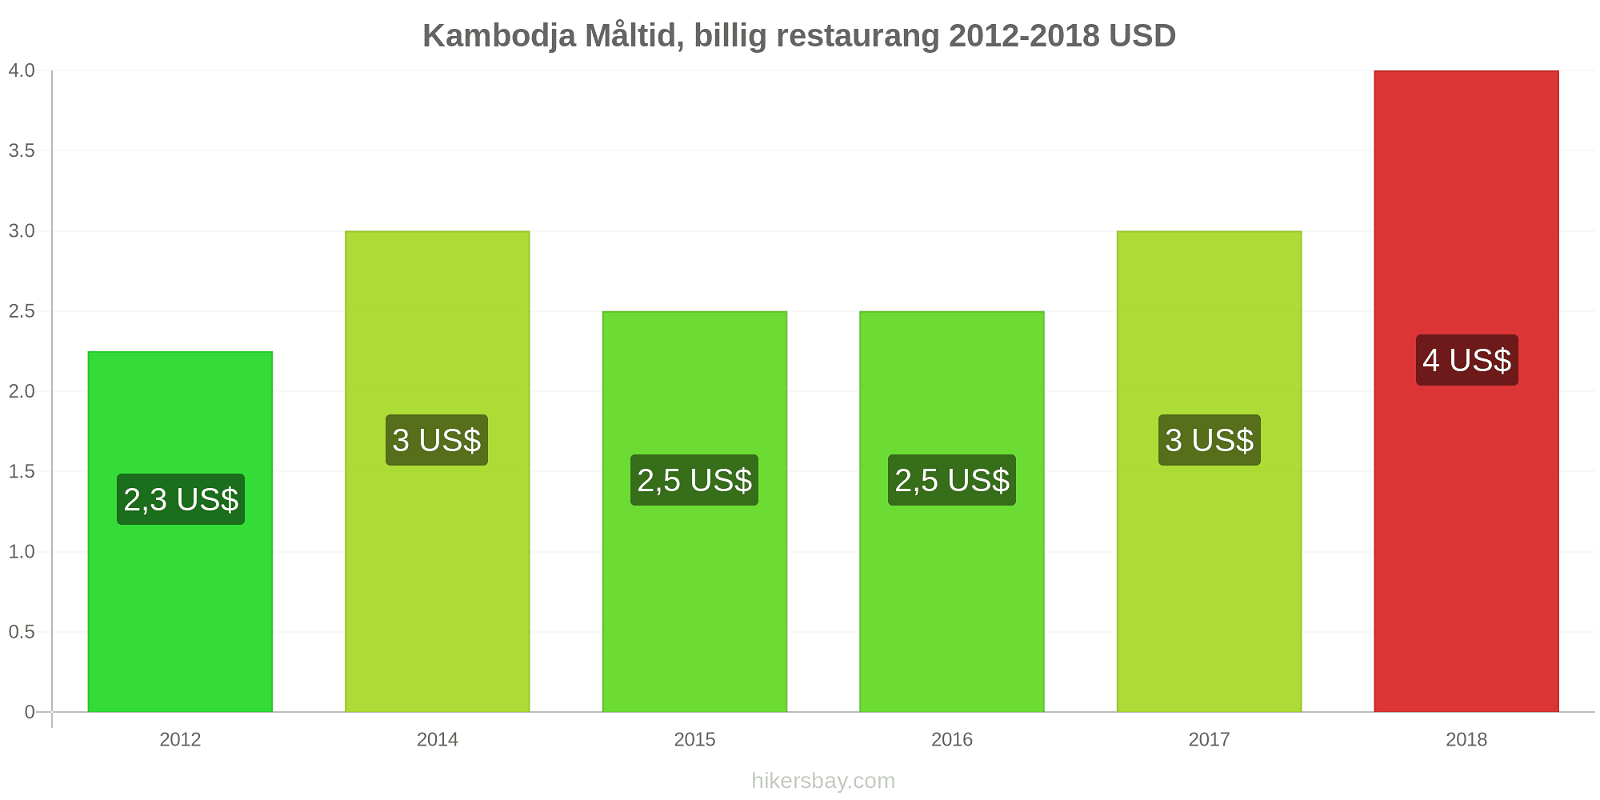 Kambodja prisändringar Måltid i en billig restaurang hikersbay.com